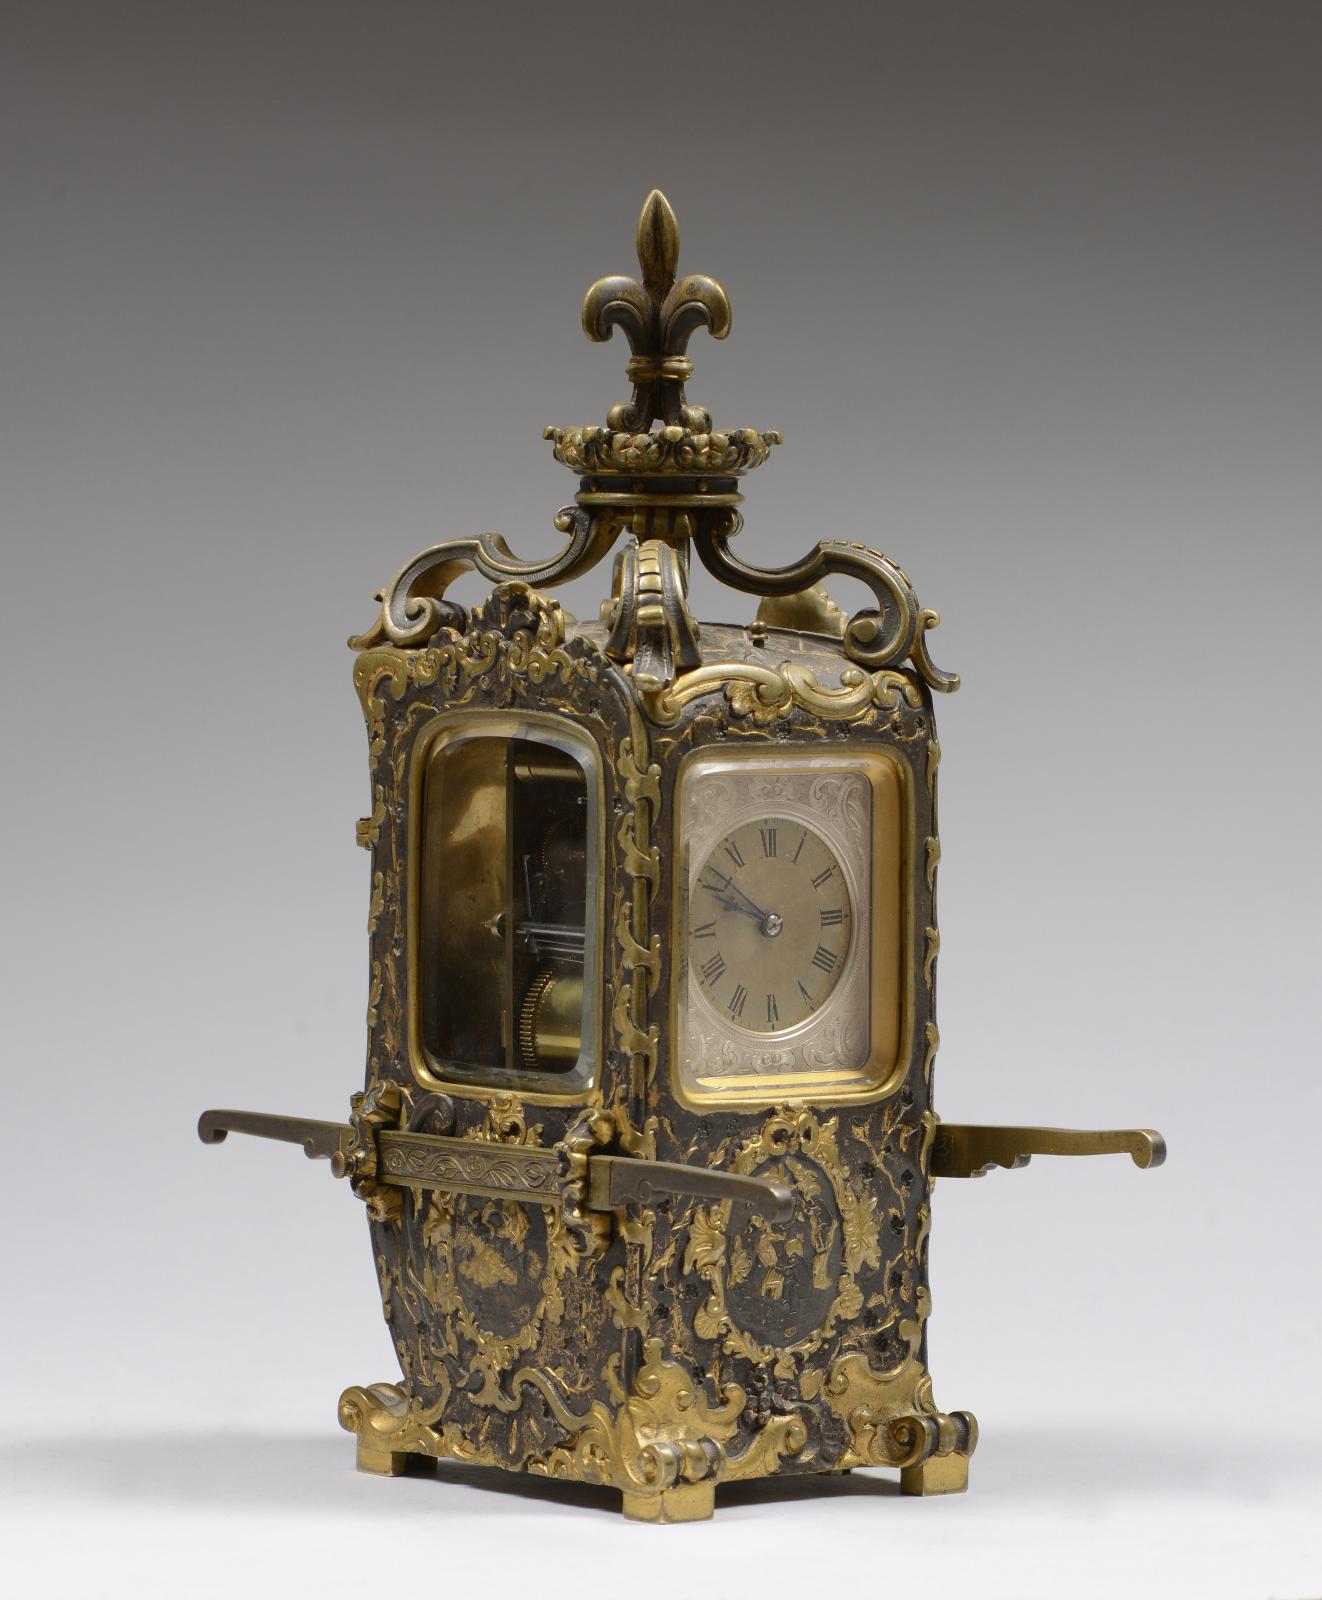 Pendulette de voyage en forme de chaise à porteurs, bronze doré et patiné à décor en trompe l’œil de cuir damasquiné de scènes galantes, vers 1880, 28